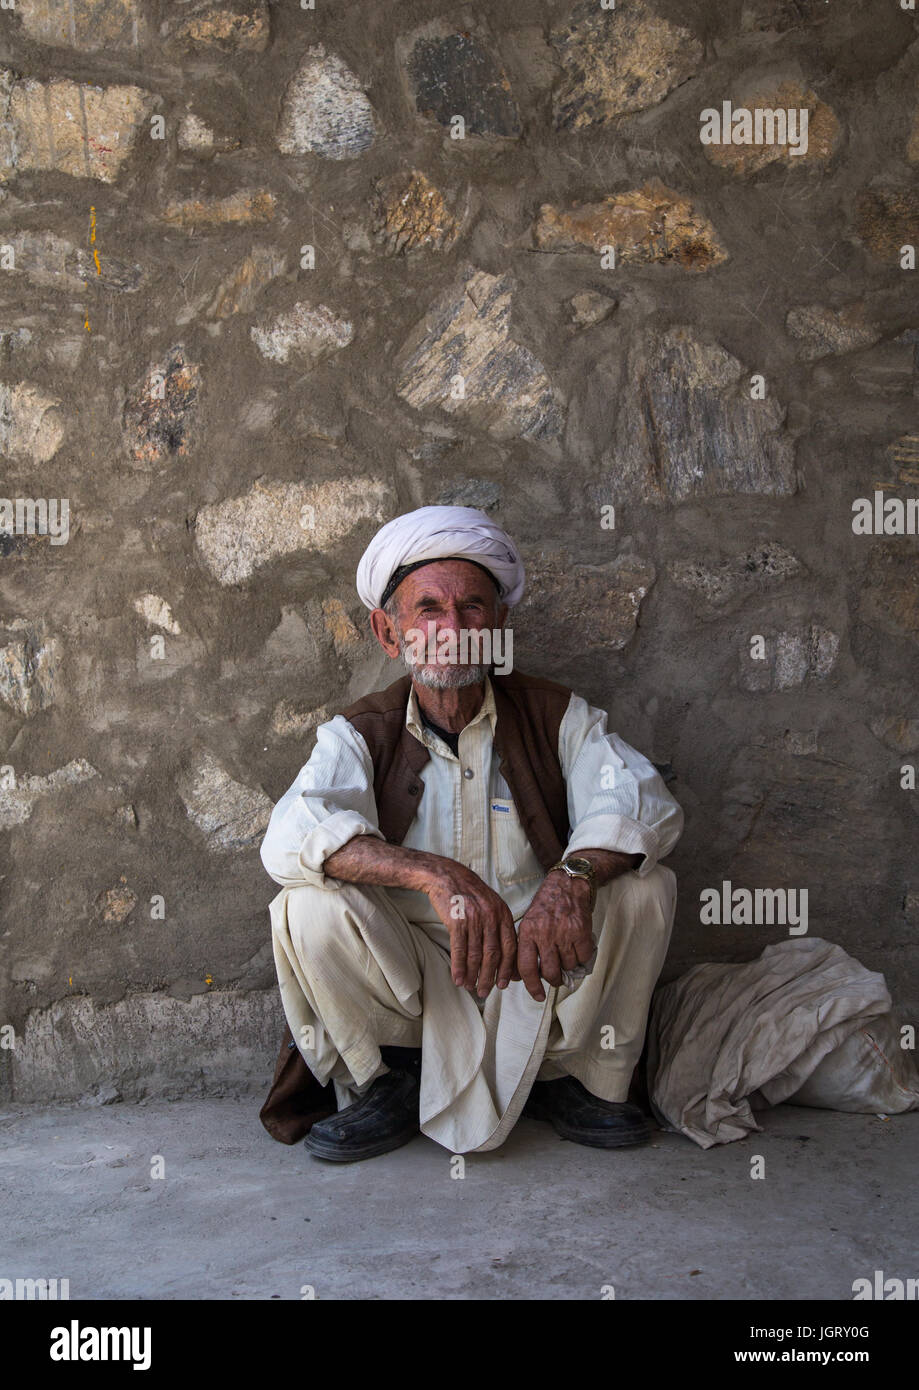 Portrait d'un homme dans l'ancien marché de l'Afghanistan à la frontière avec l'Afghanistan, l'Asie centrale, le Tadjikistan, Ishkashim Banque D'Images